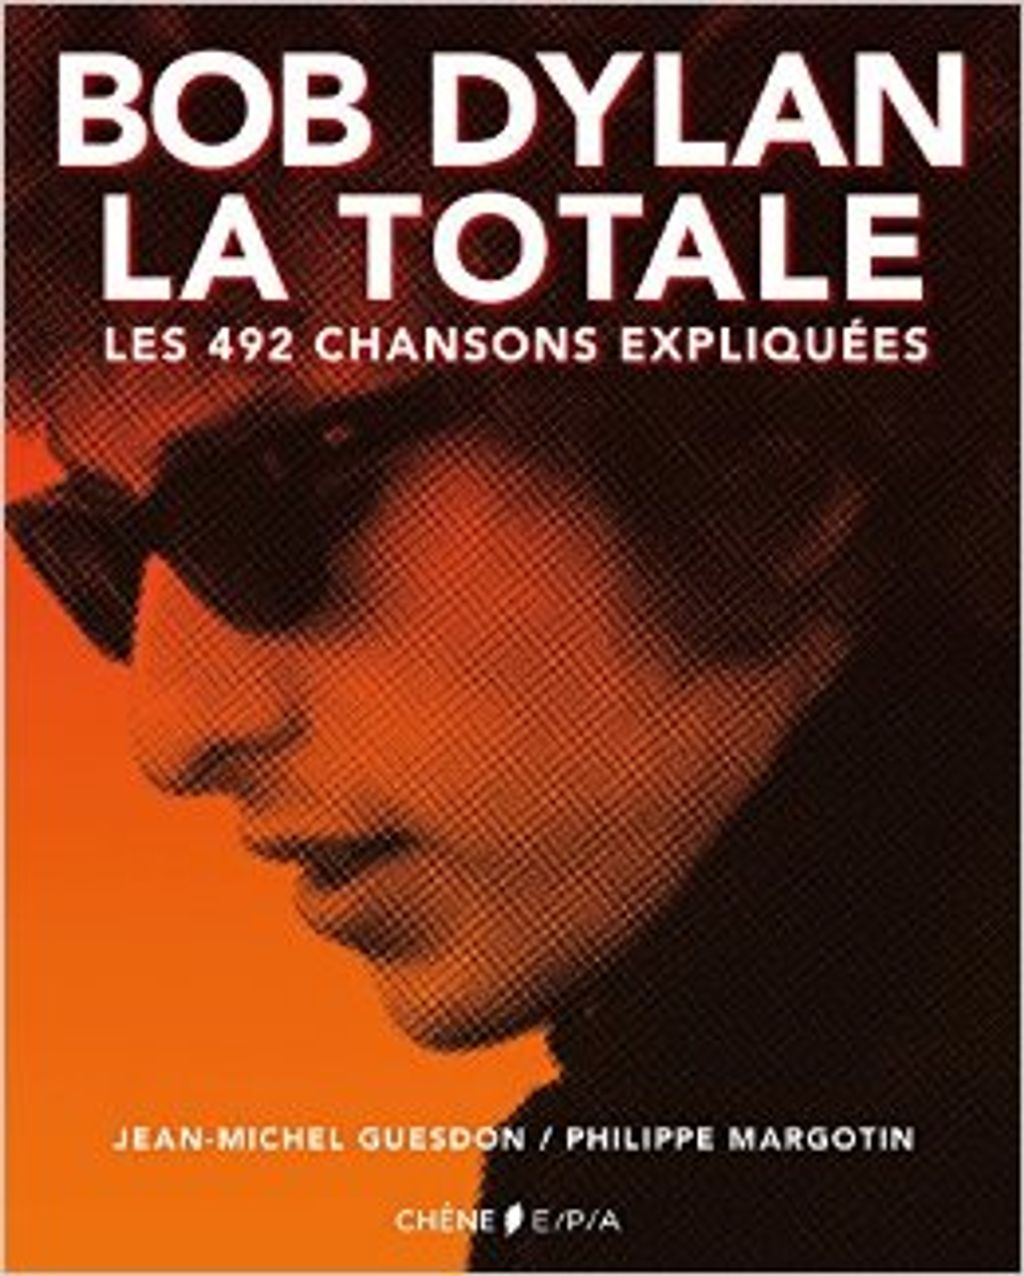 "Bob Dylan, La Totale" : les 492 chansons de Bob Dylan expliqu - Les Beatles La Totale Les 211 Chansons Expliquées